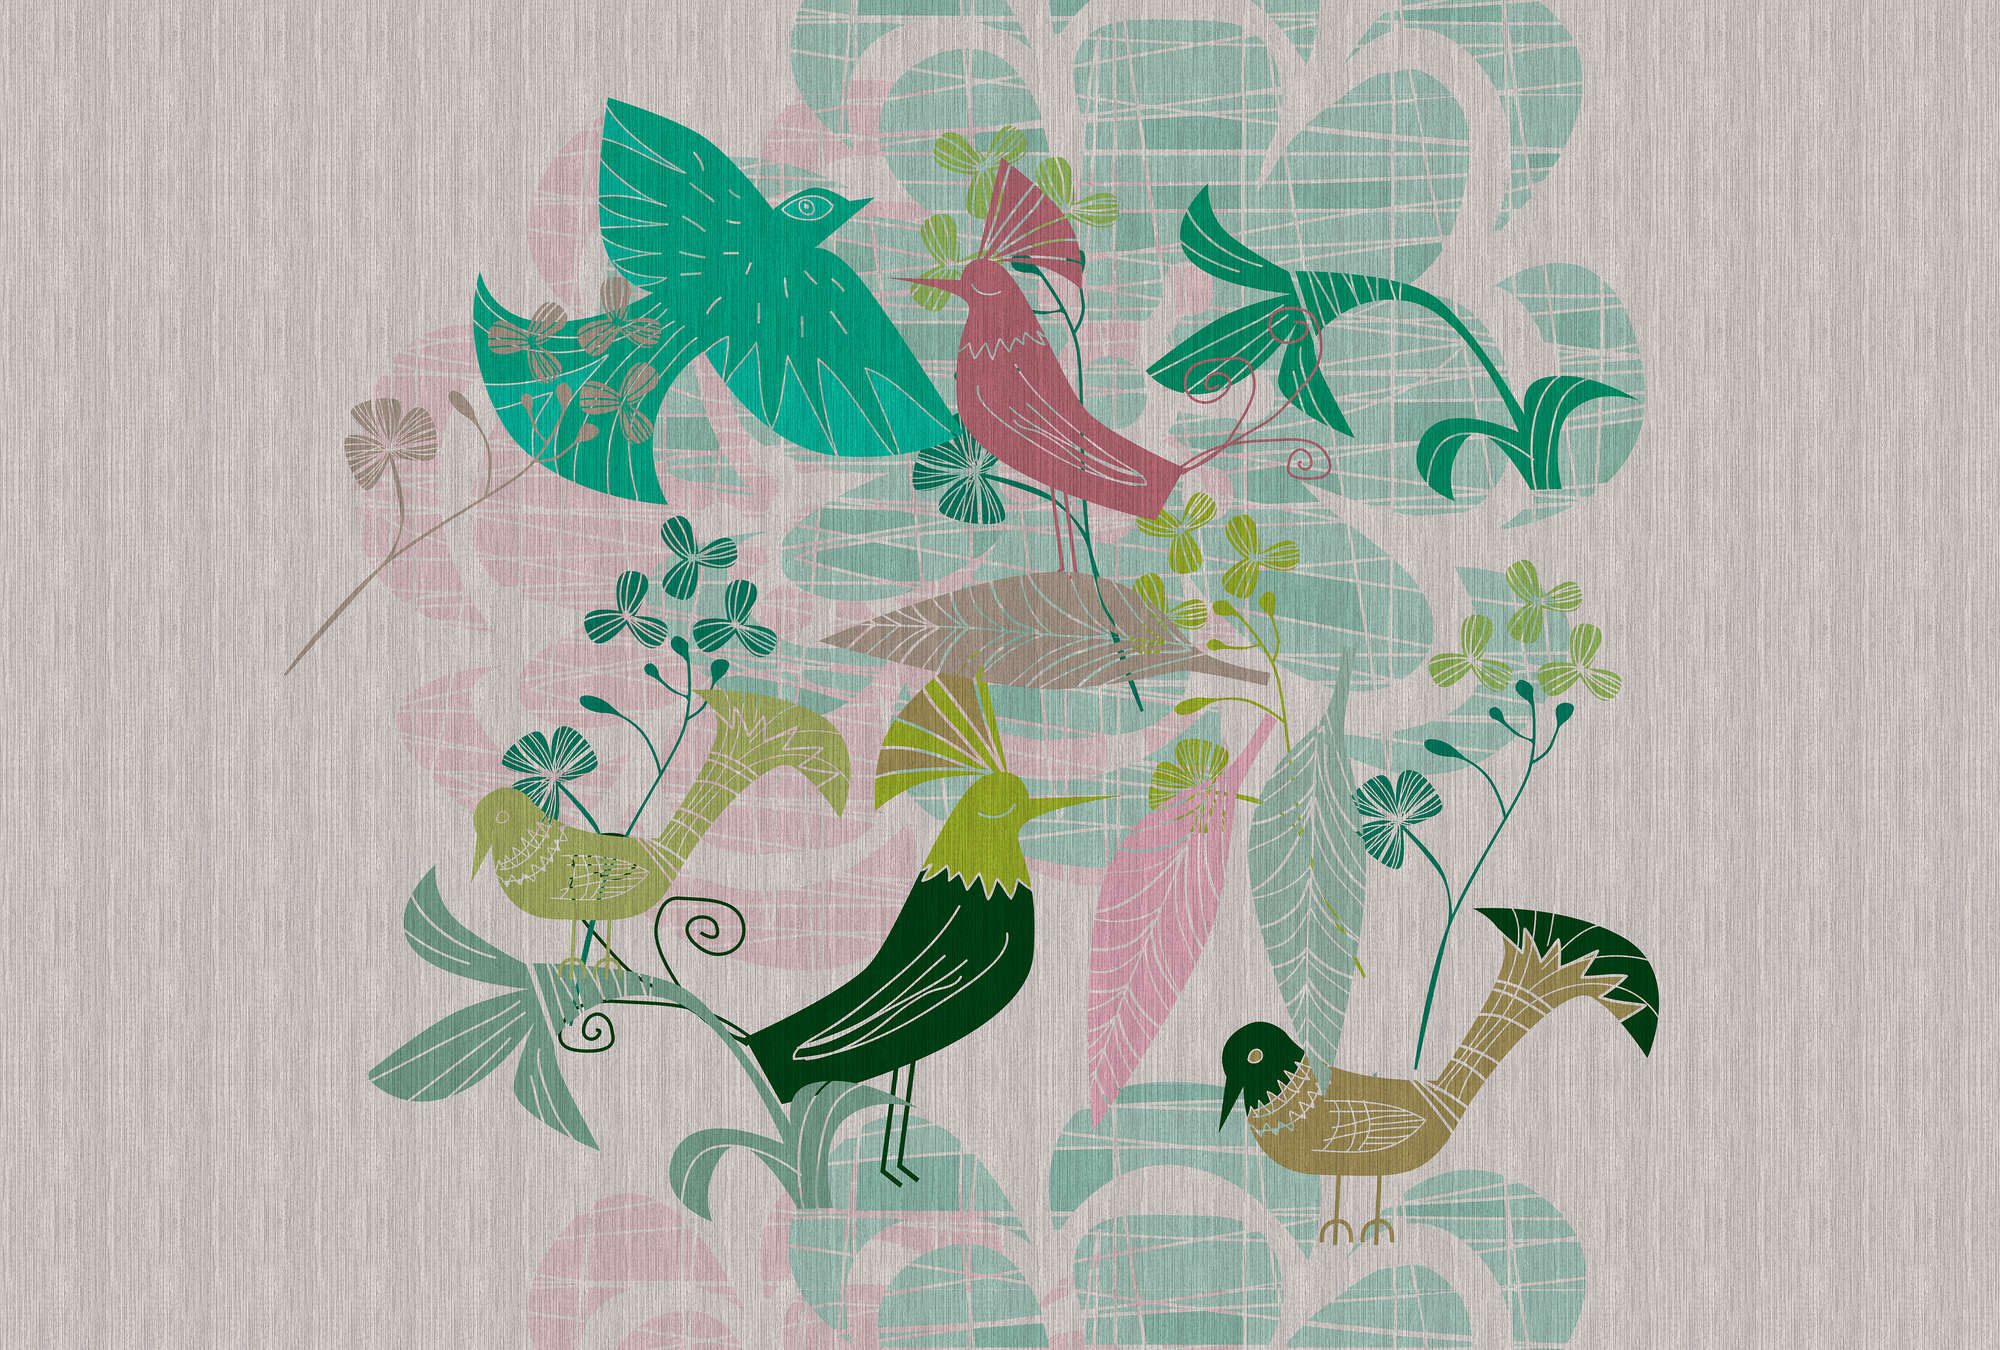             Birdland 3 - Carta da parati con motivi di uccelli verdi e rosa in stile retrò
        